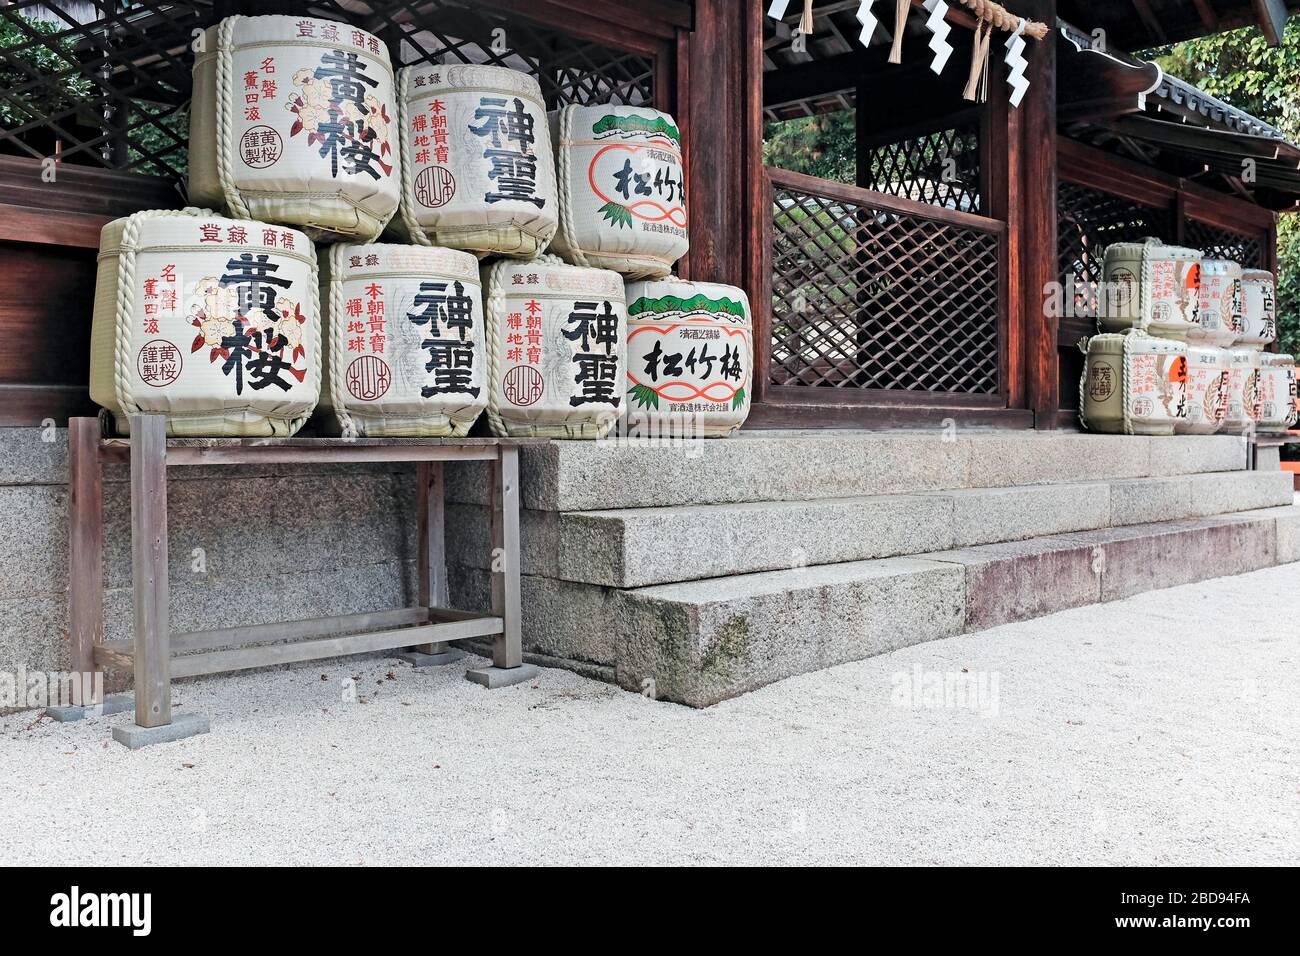 Botti di vino di riso in mostra fuori da un tempio a Kyoto, Giappone. Le botti riccamente decorate contengono la bevanda Nazionale Giapponese. Foto Stock